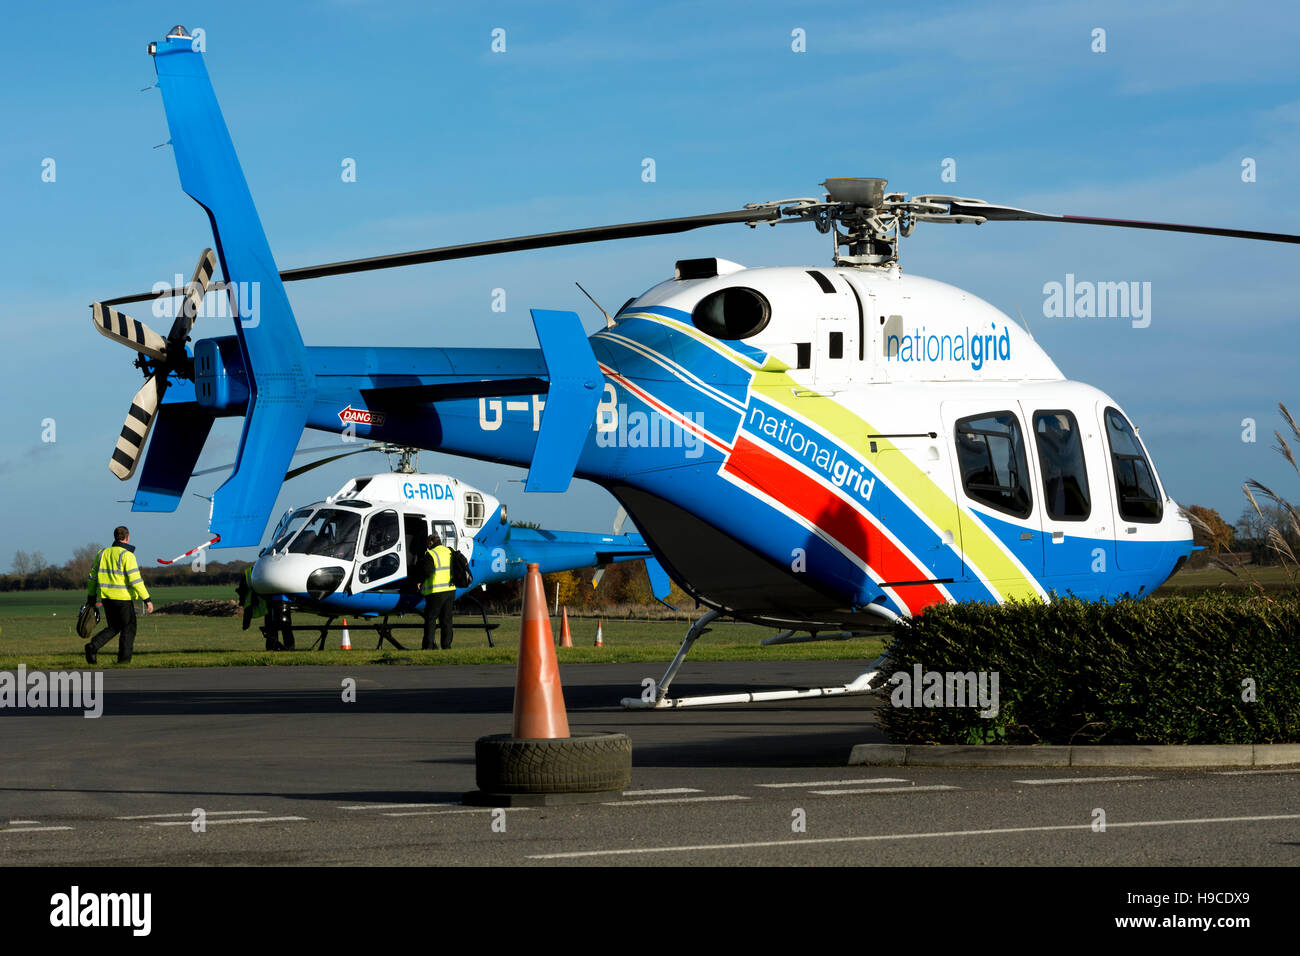 National Grid helicopters at Turweston Aerodrome, Buckinghamshire, UK Stock Photo